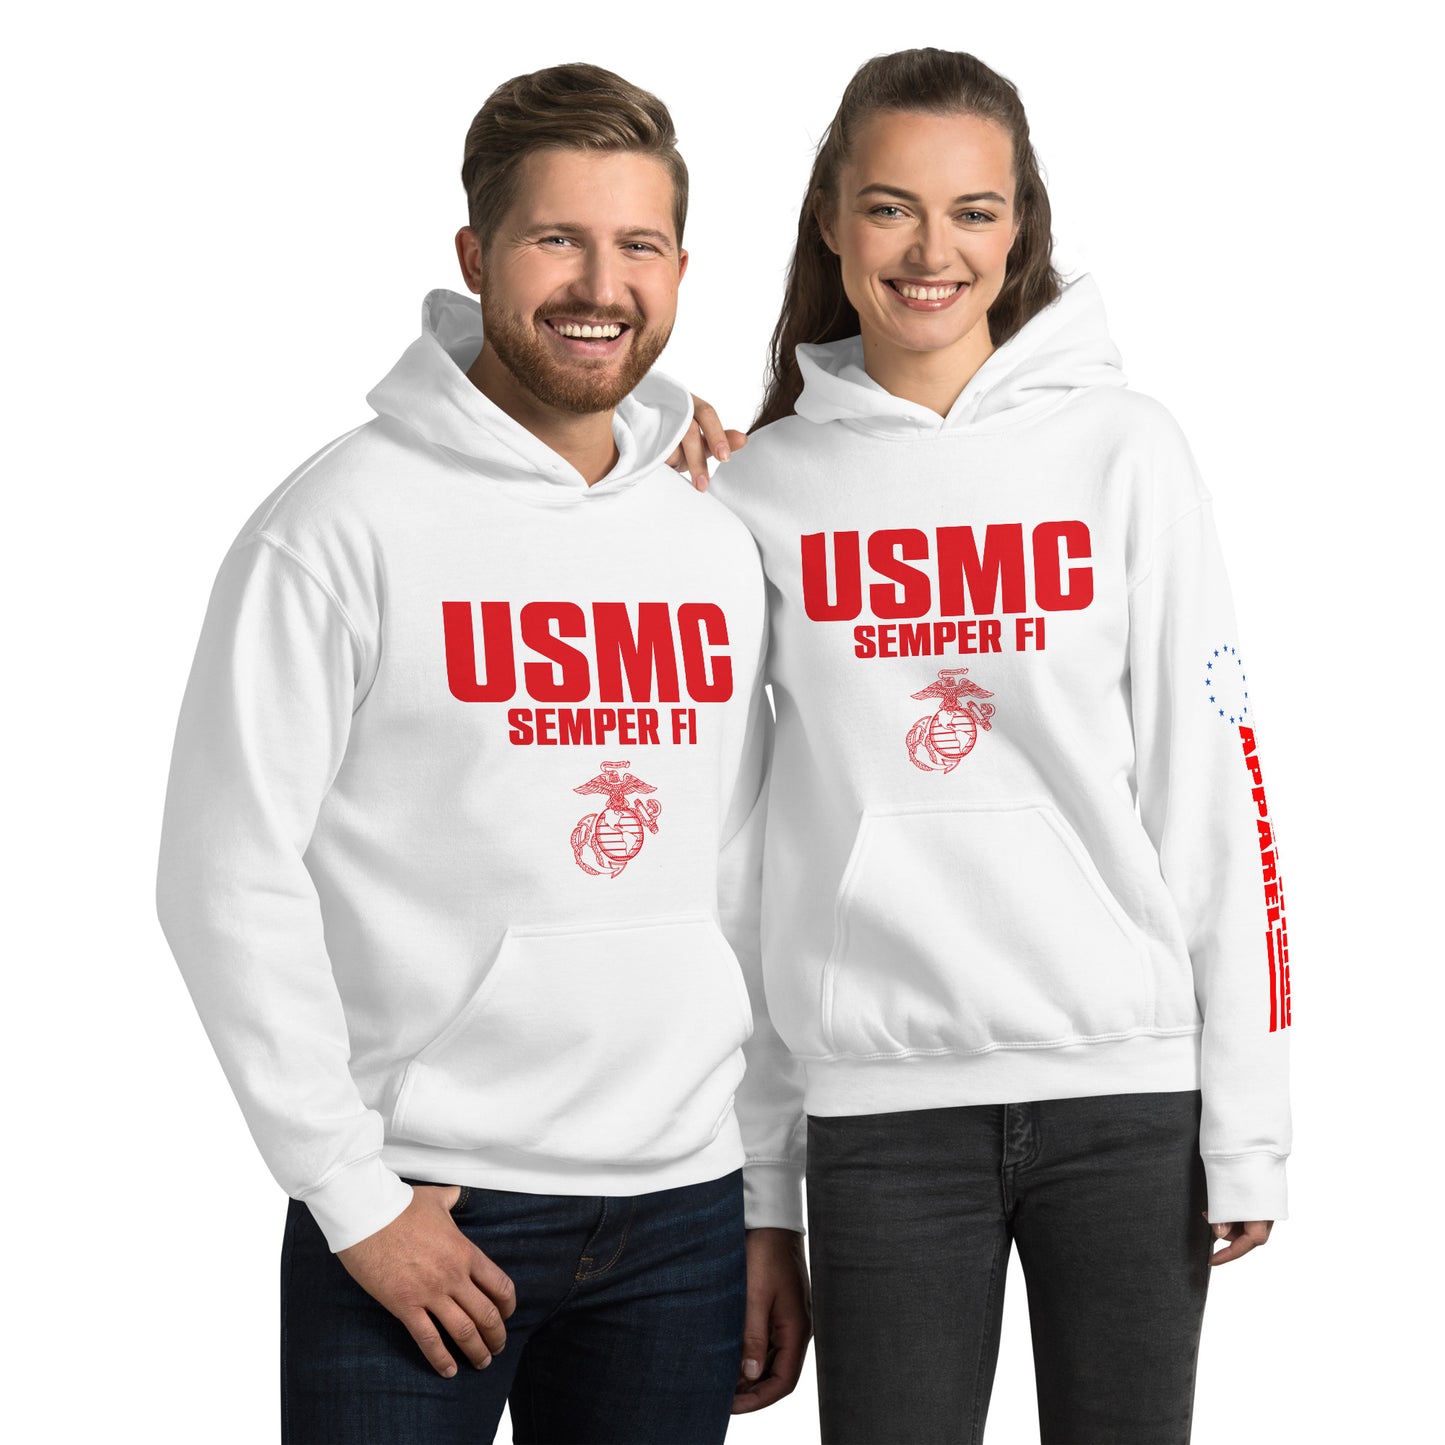 USMC-Semper Fi Unisex Hoodie